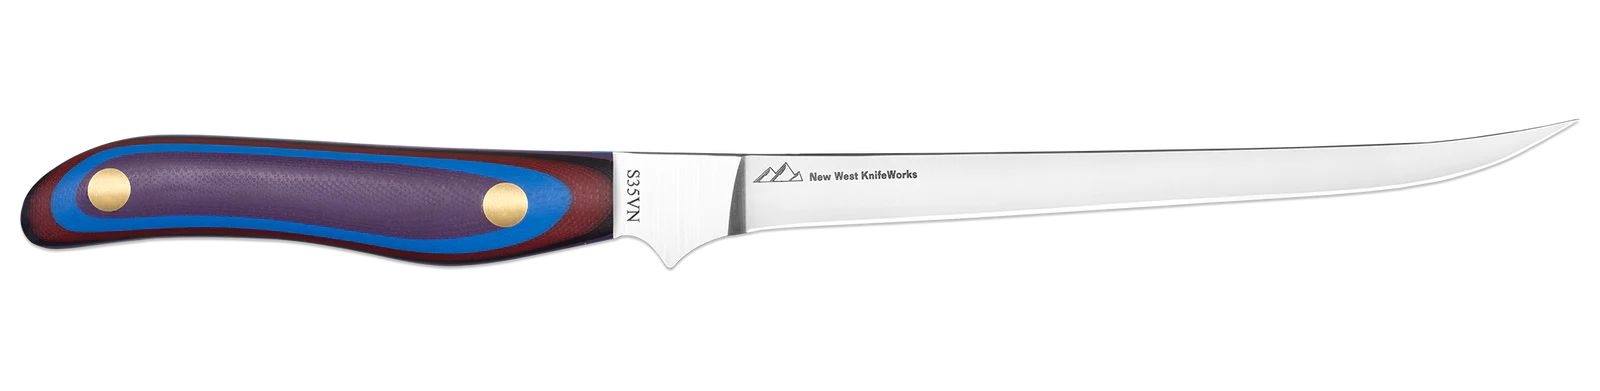 New West KnifeWorks 7" Fillet Knife